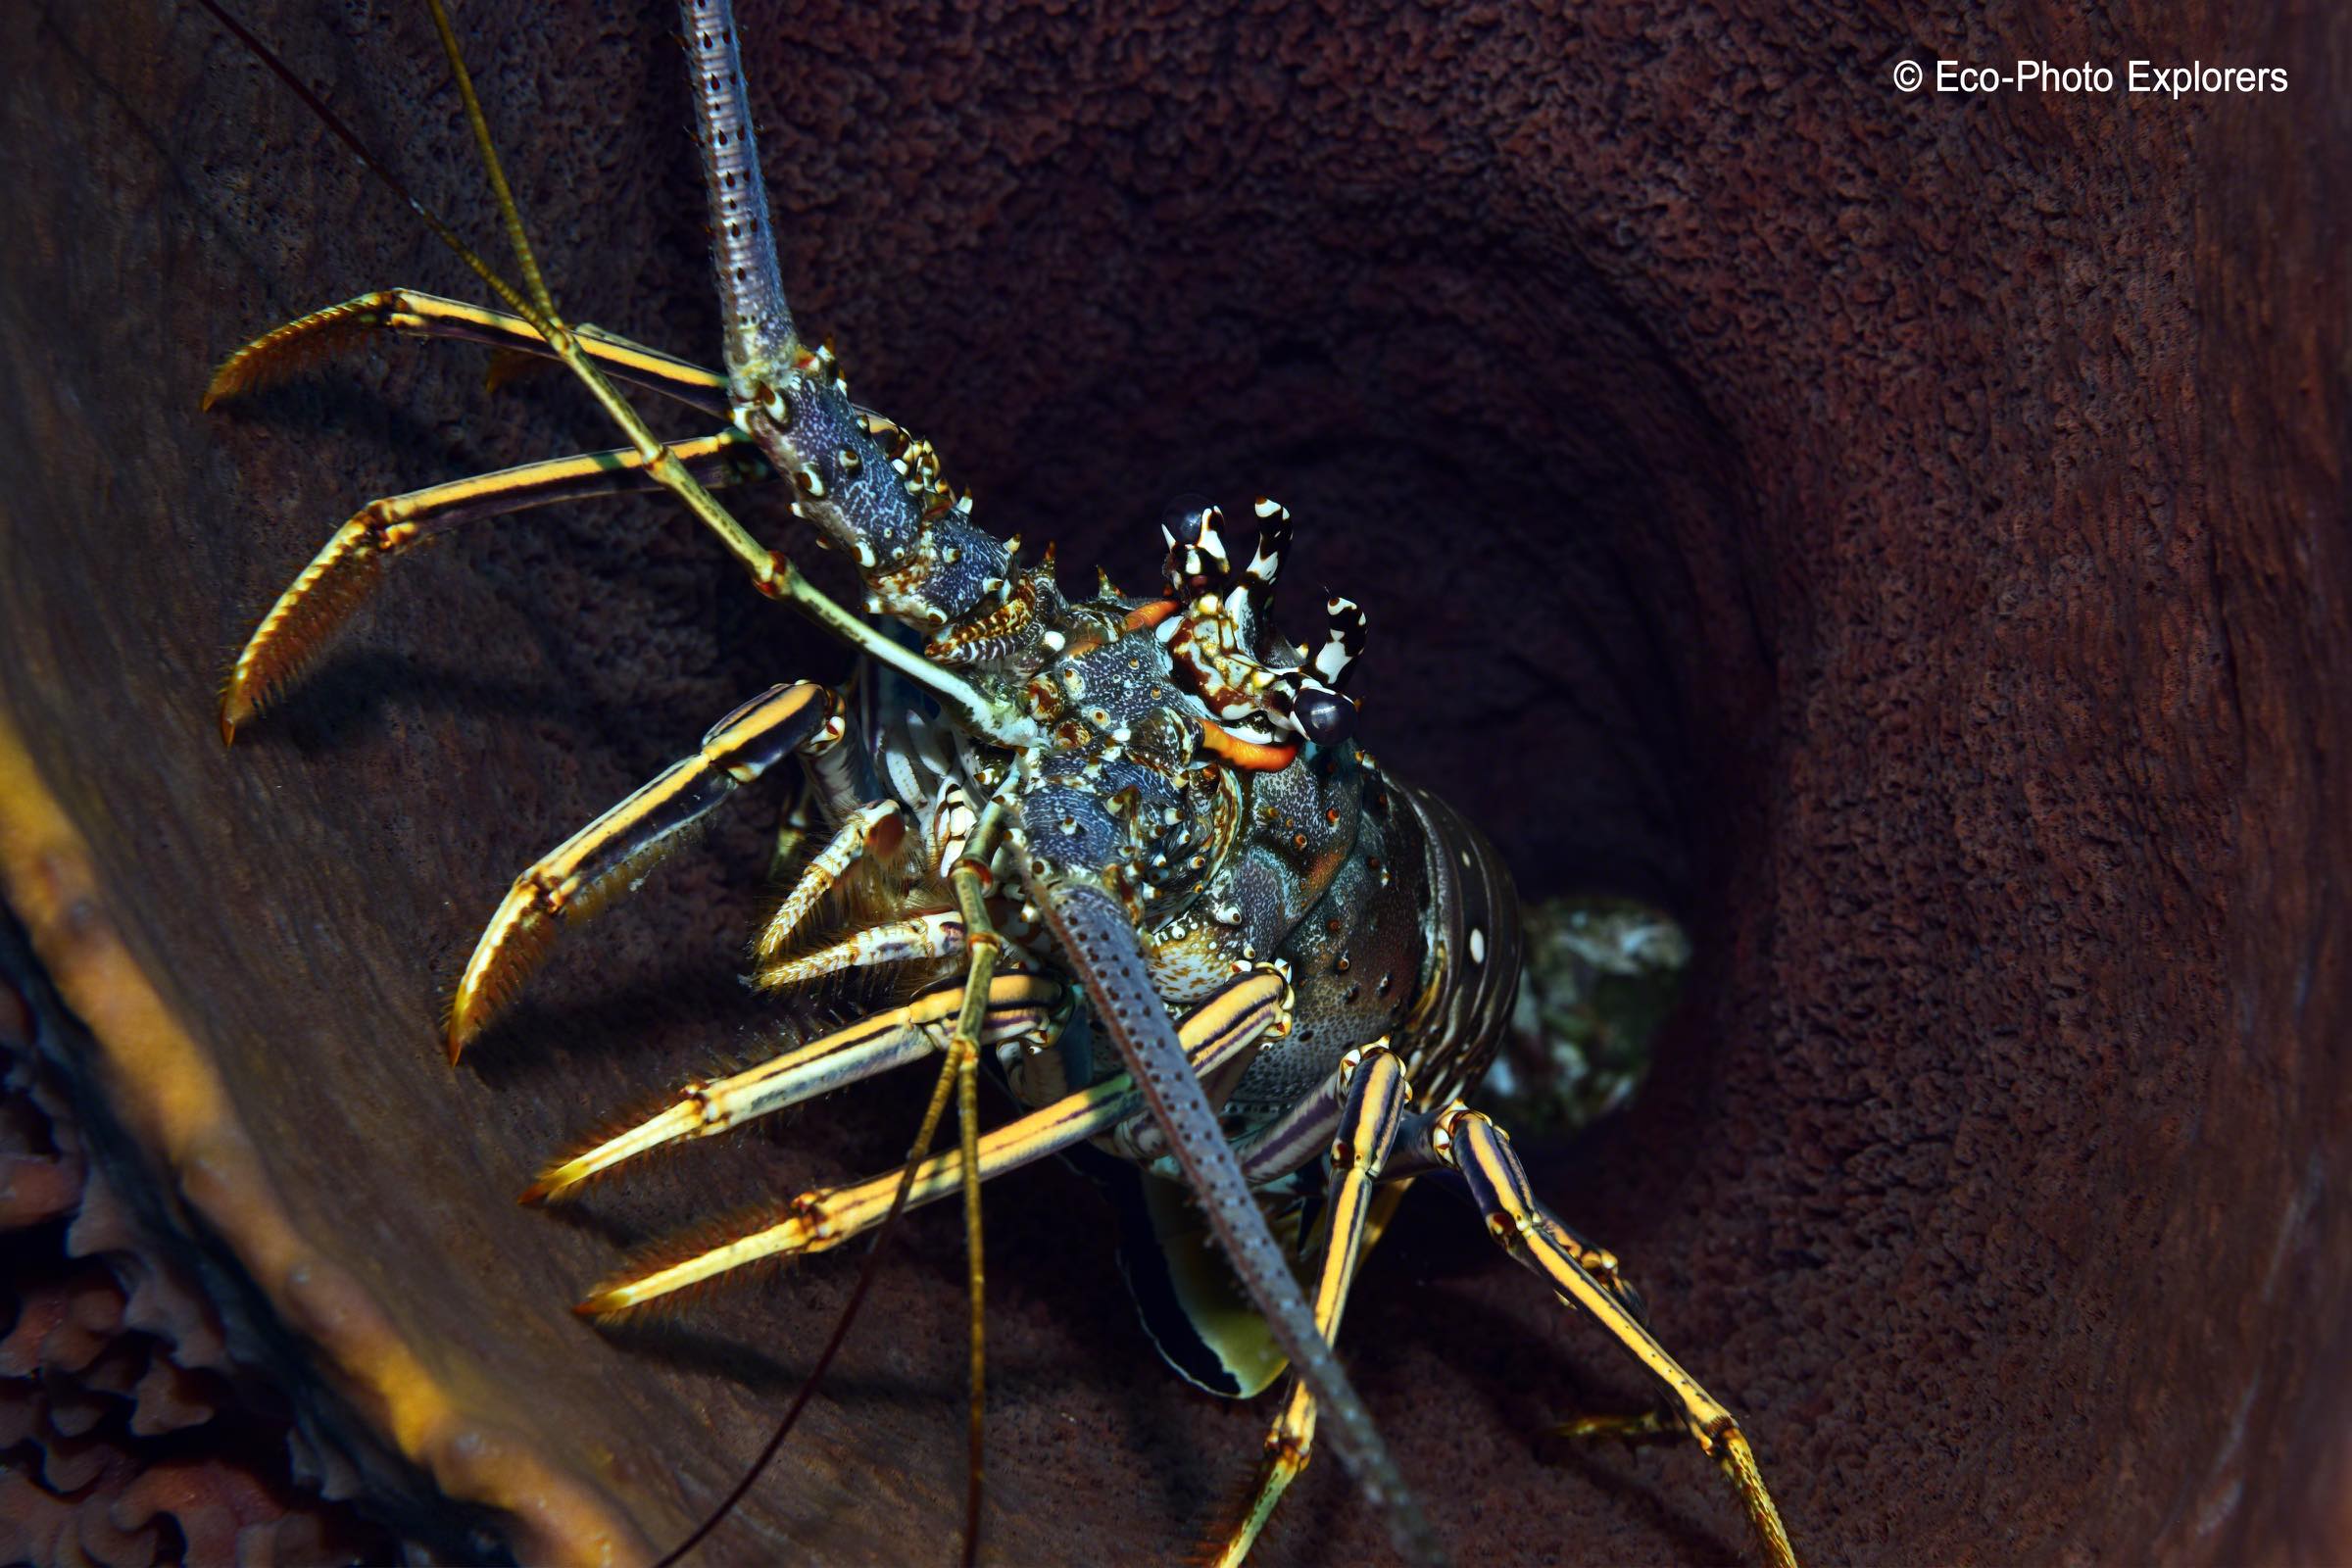 Spiny Lobster inside a barrel sponge